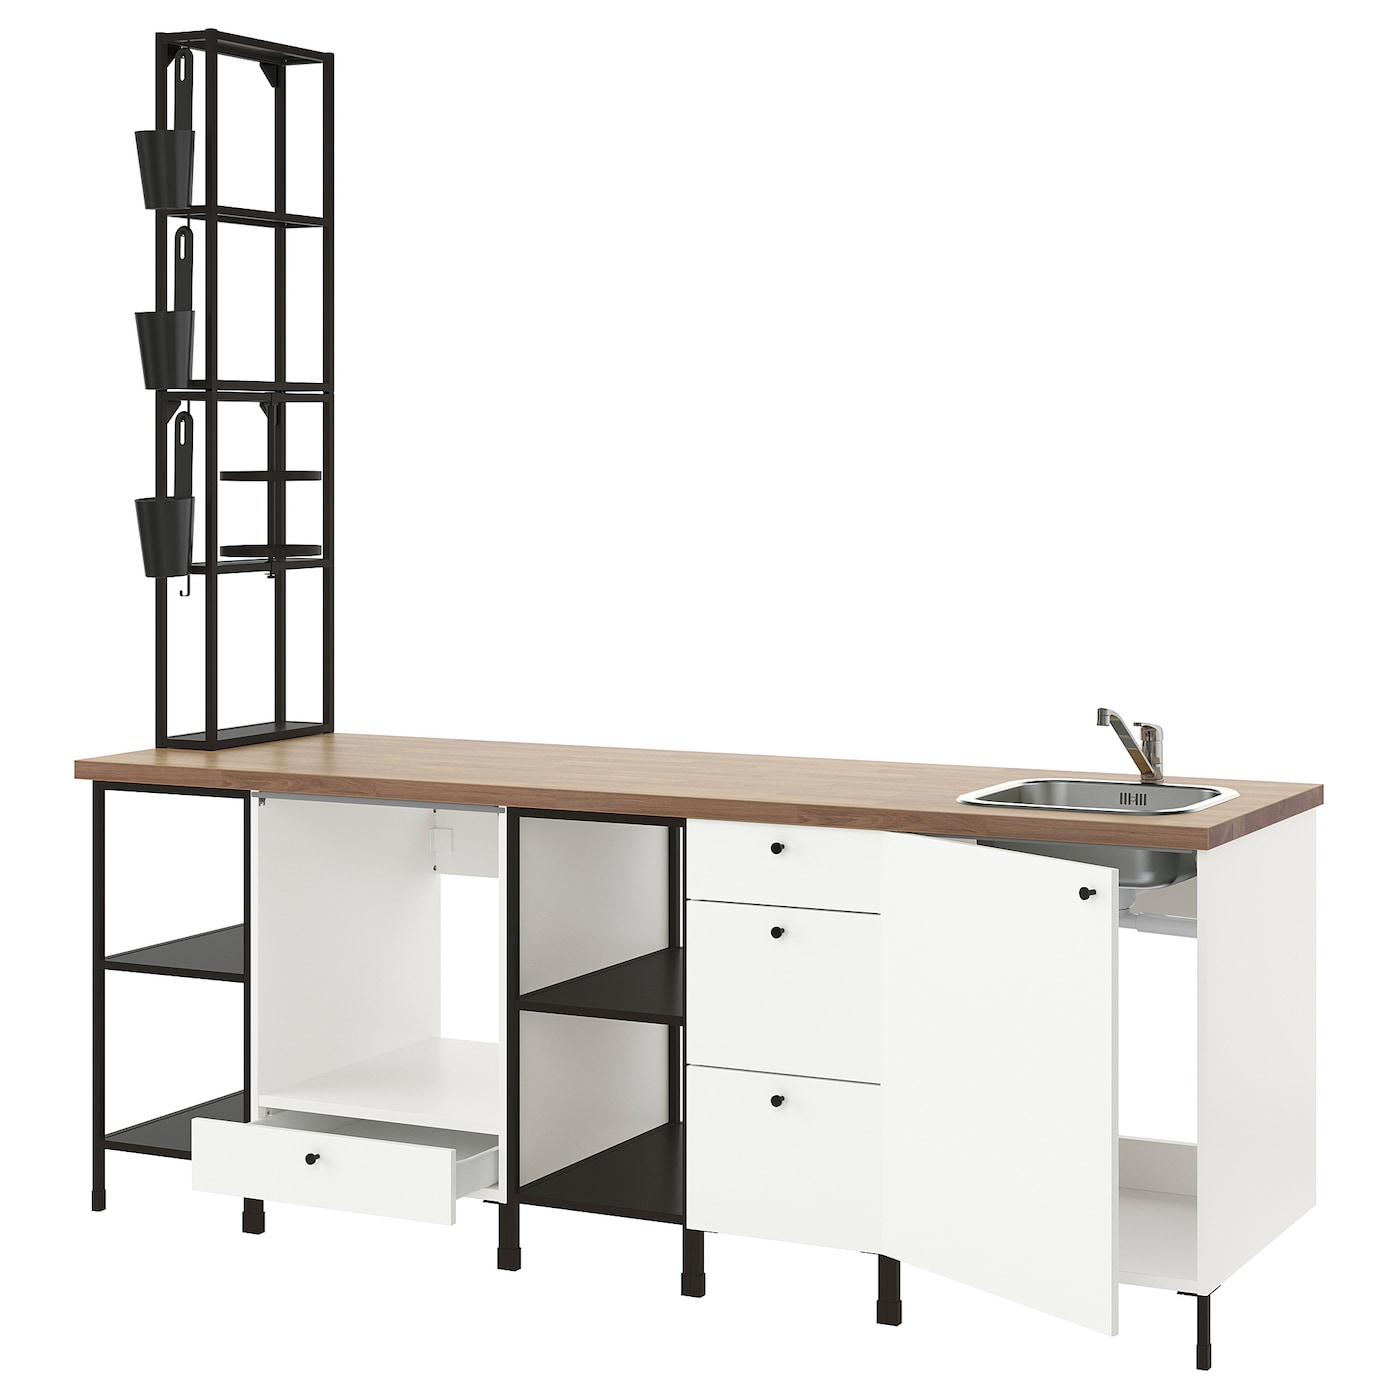 Комбинация для кухонного хранения  - ENHET  IKEA/ ЭНХЕТ ИКЕА, 243x63,5x241 см, белый/бежевый/черный